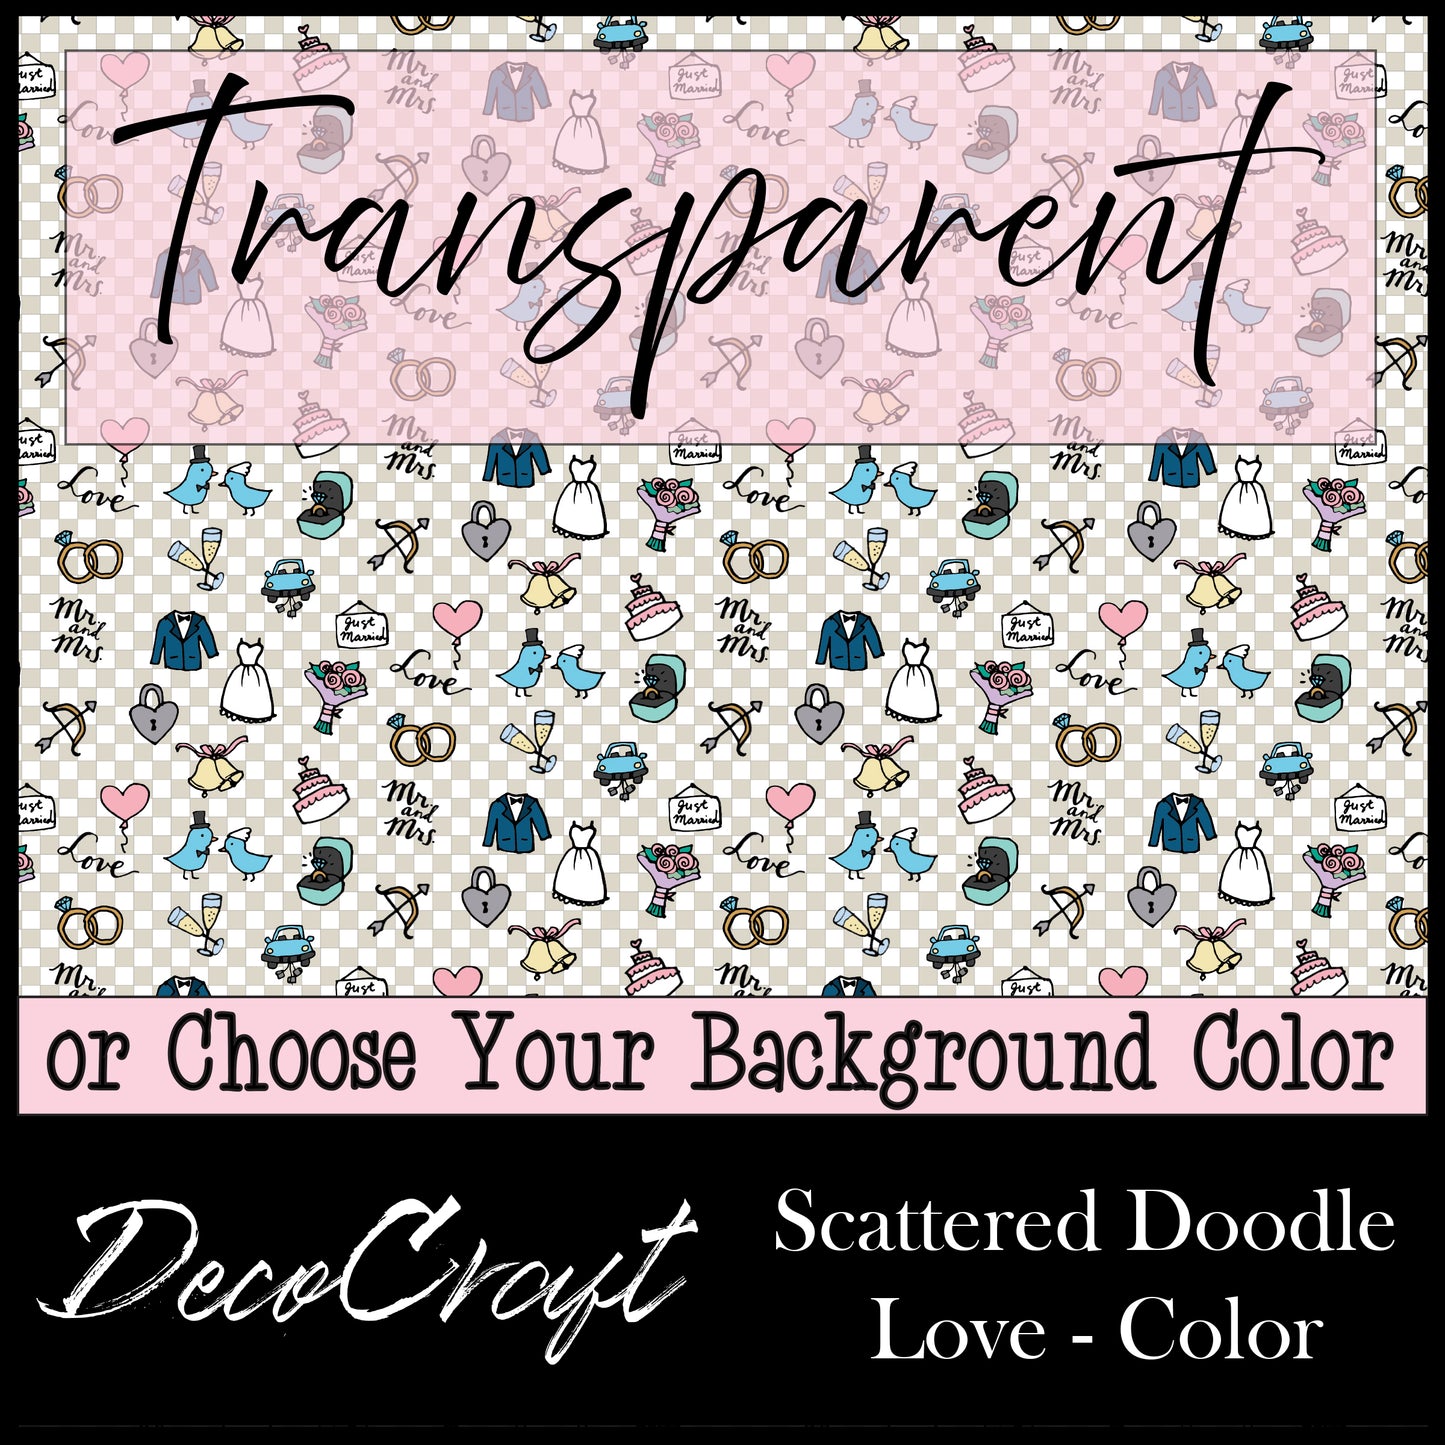 DecoCraft - Wedding - Scattered - Doodle Love - Color